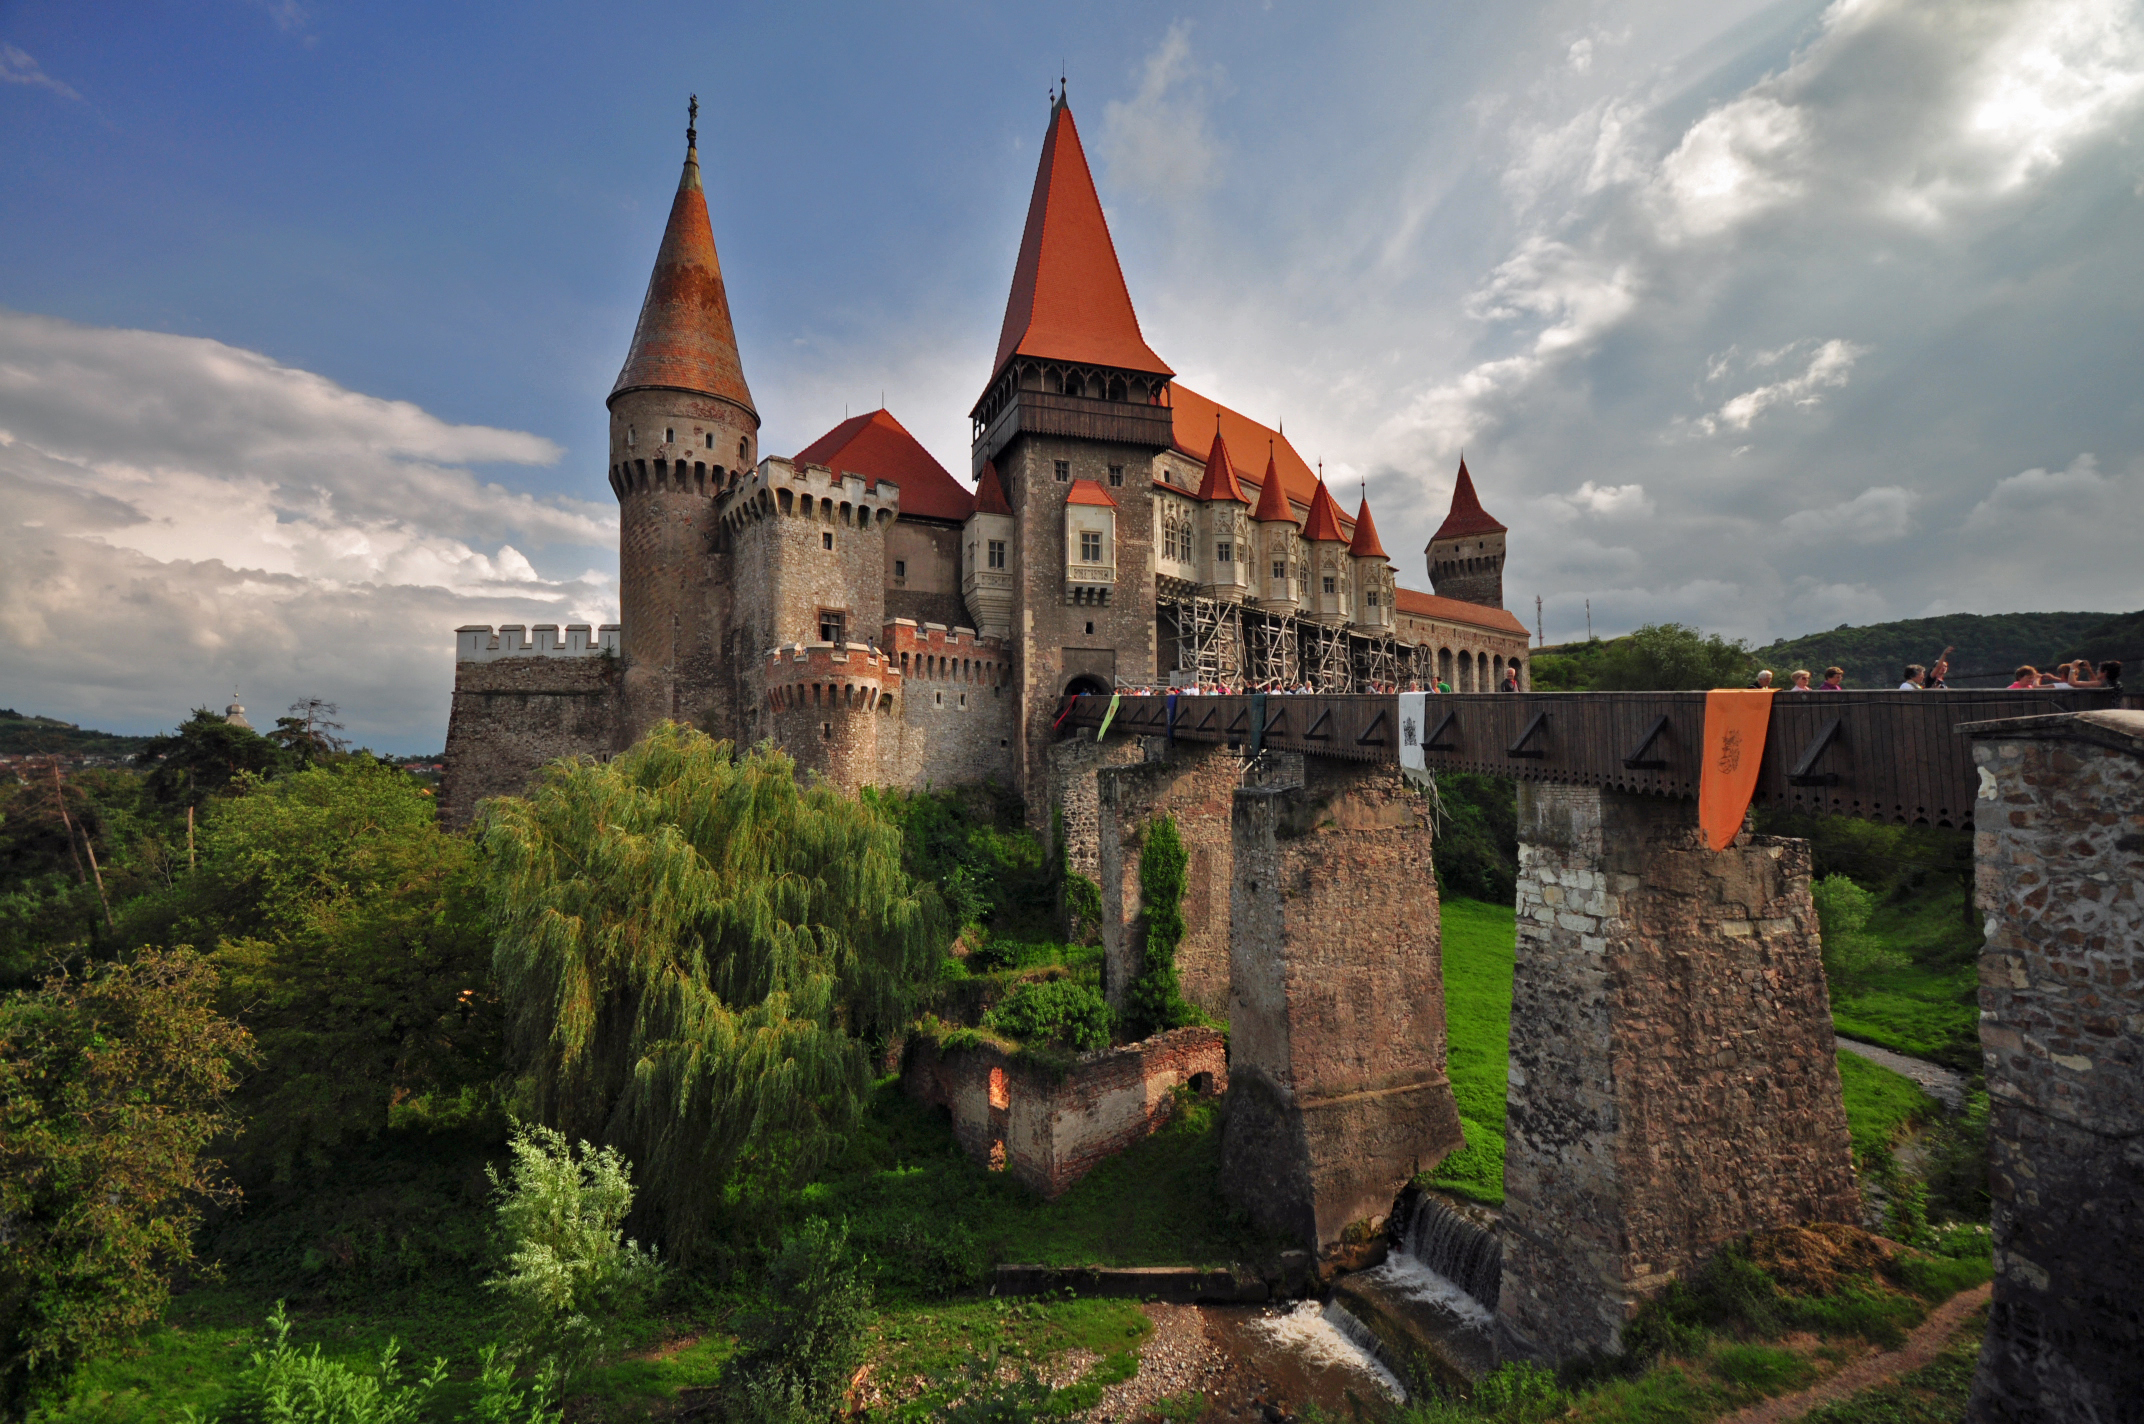 Corvin’s Castle – Transylvania